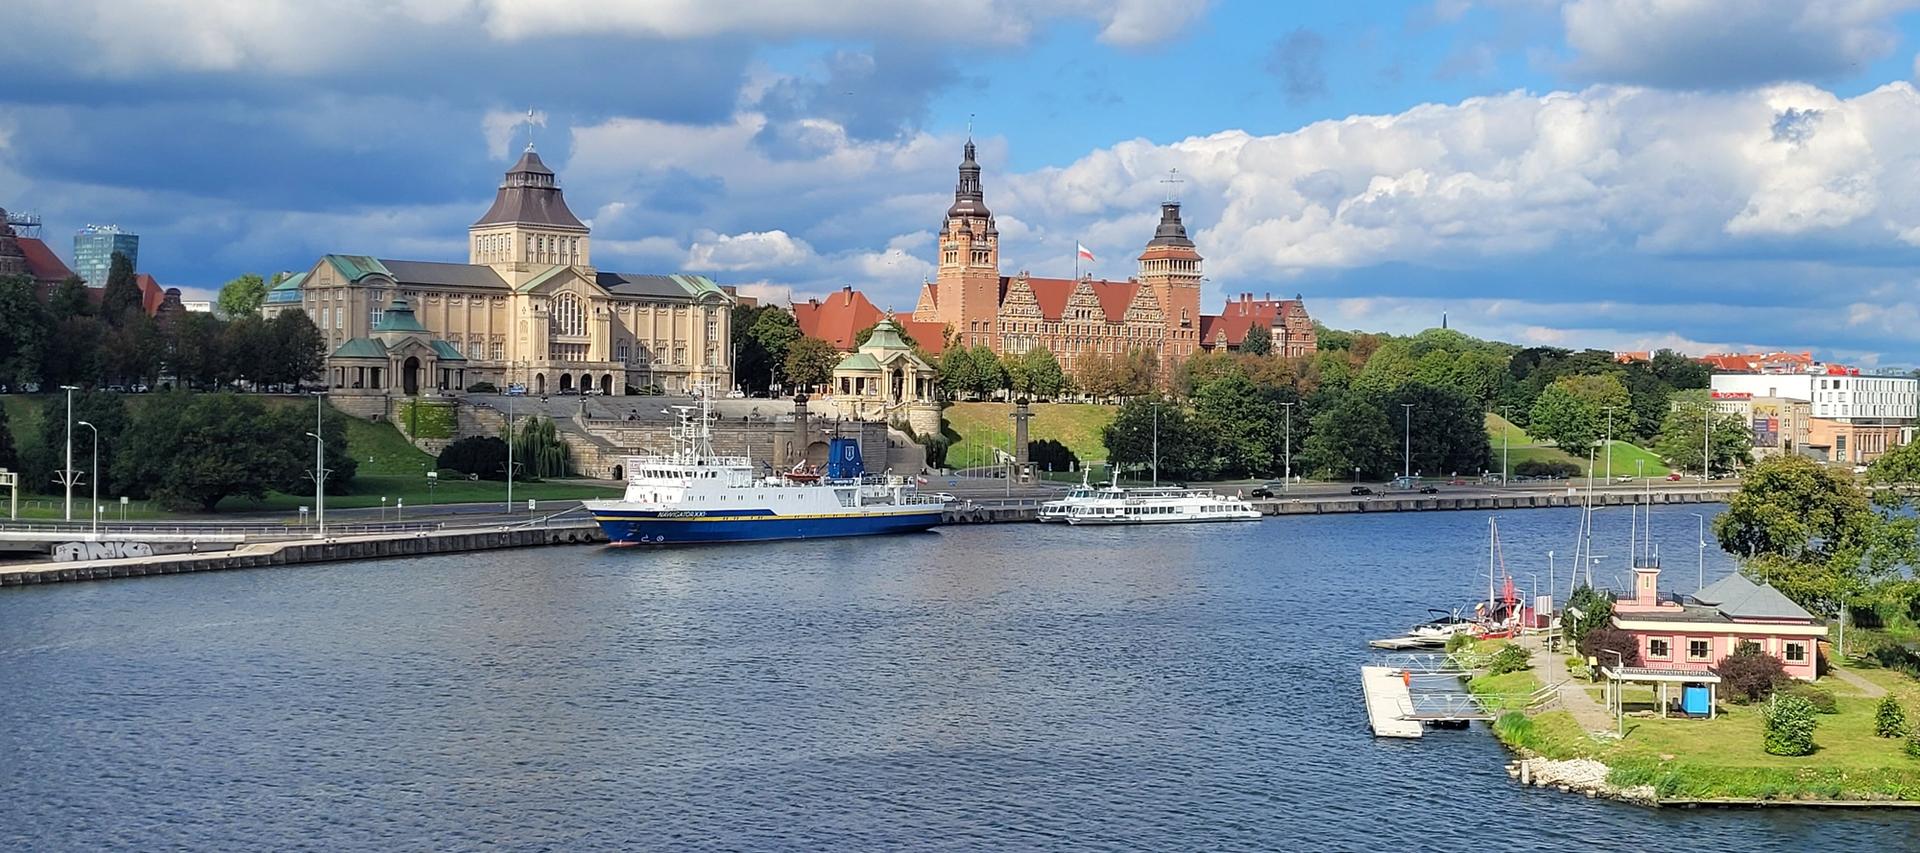 Bilde av elv og gamle bygninger i Szczecin